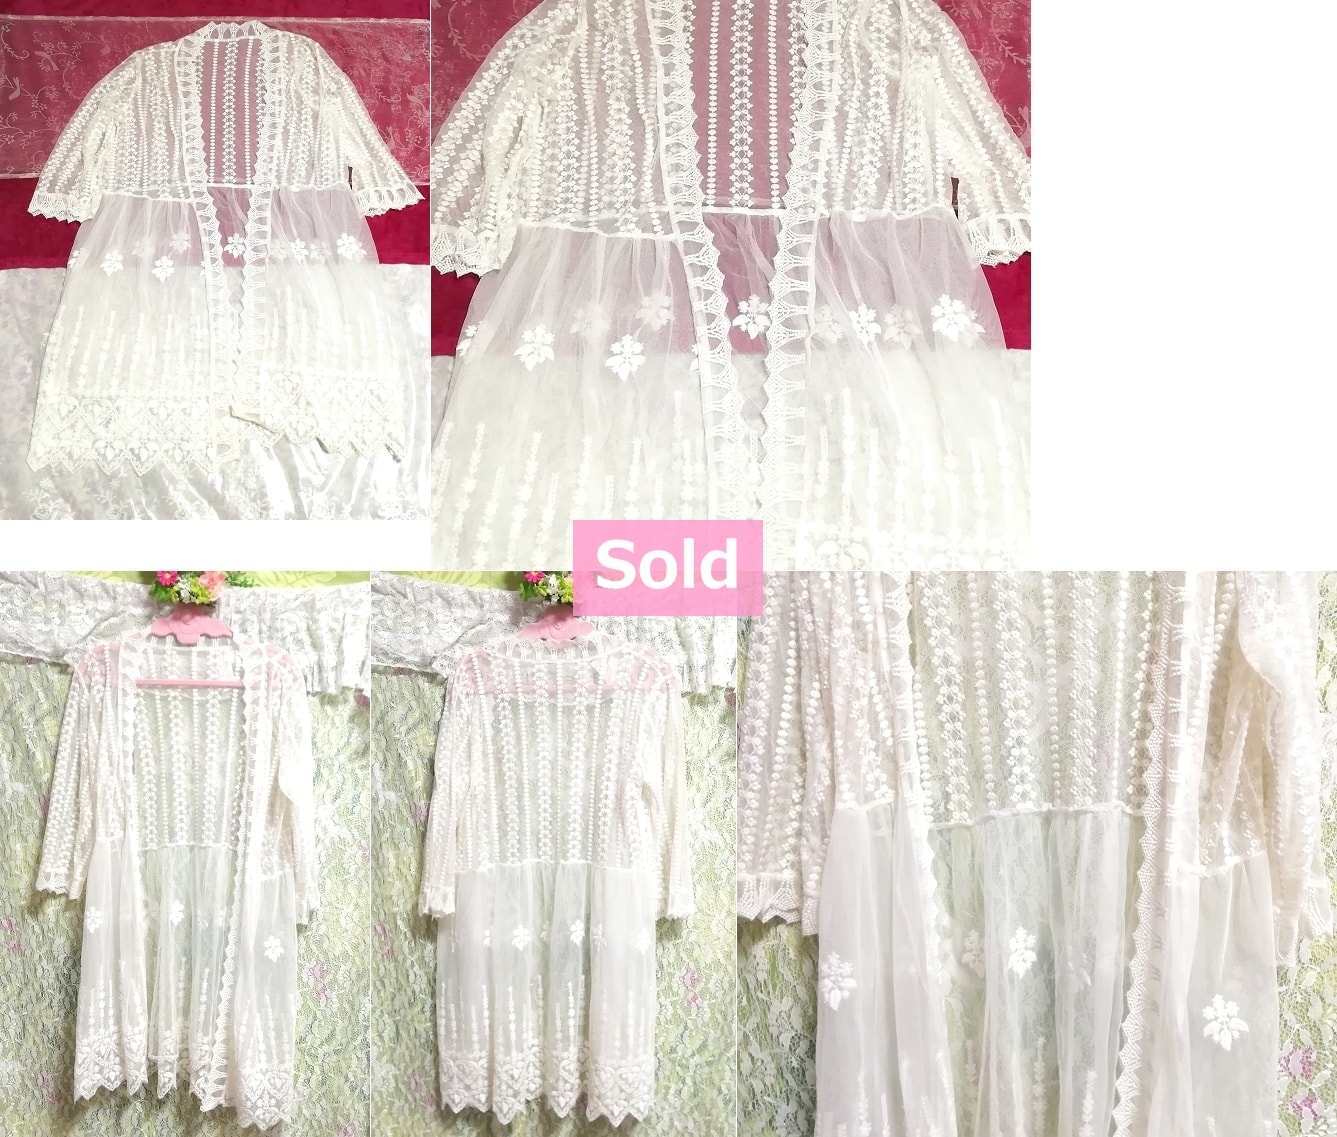 白ホワイトレース花柄刺繍/羽織/シースルーカーディガン White lace floral pattern embroidery/see through cardigan